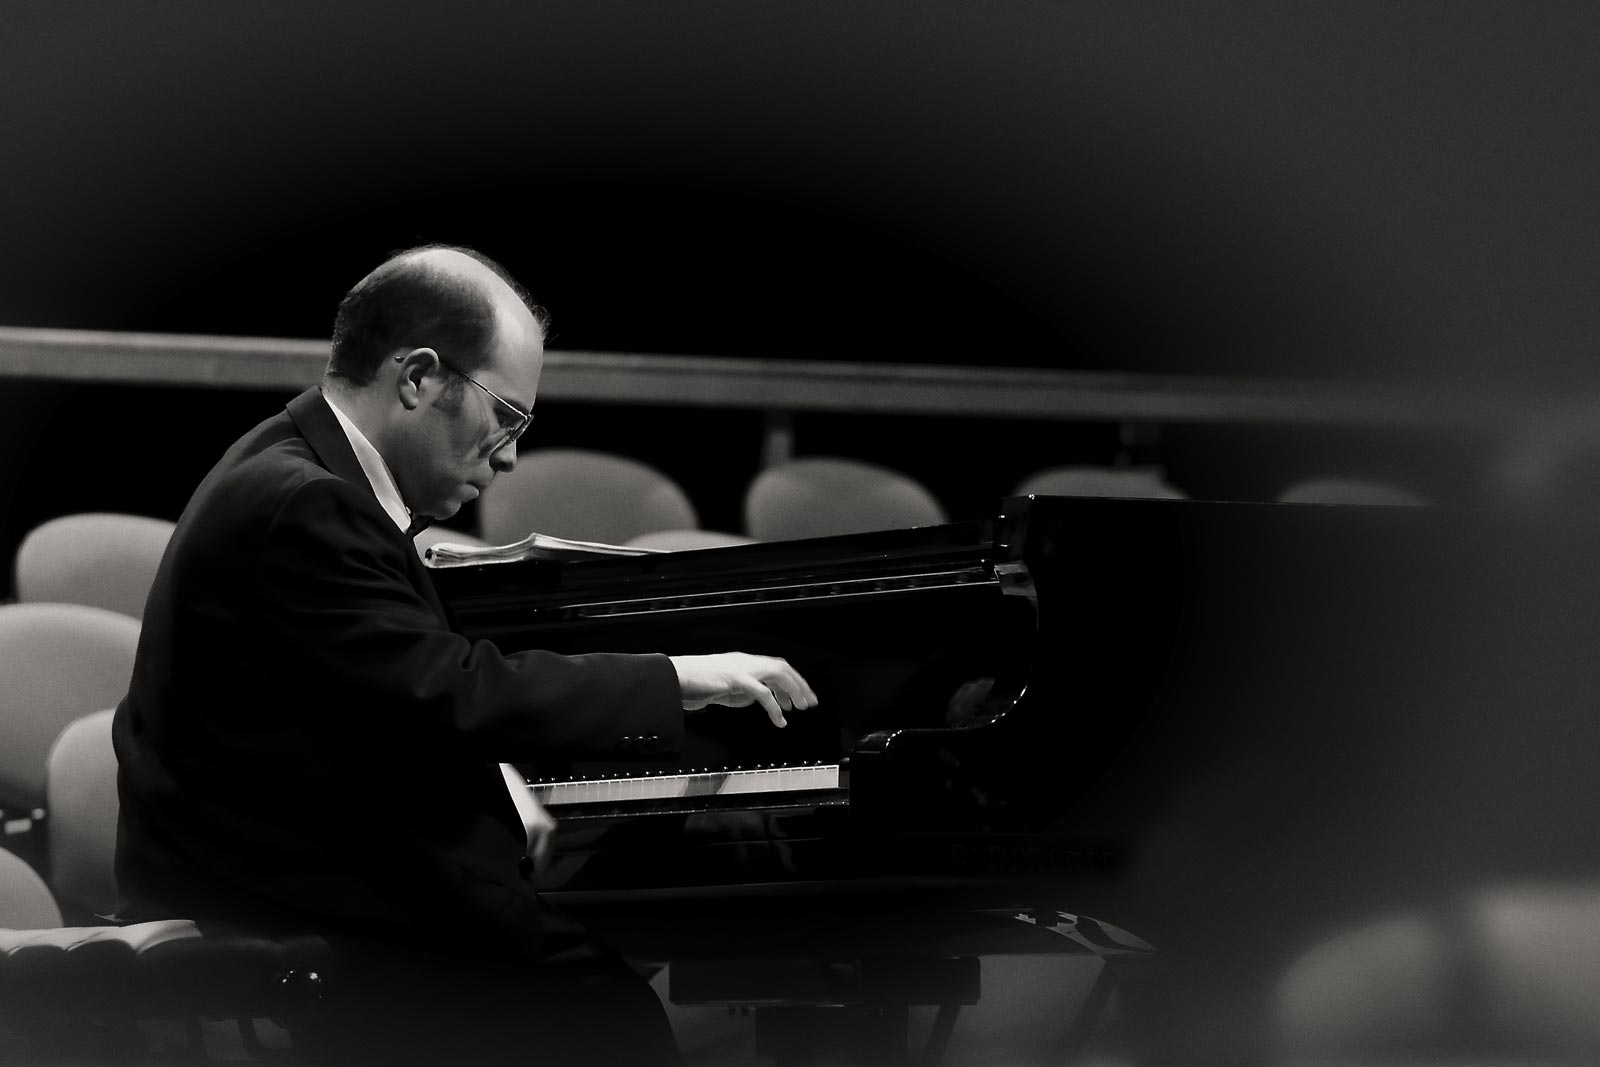 “Da Bach a Debussy”. Andrea Trovato, pianoforte. Loro Ciuffenna 28.07.2021